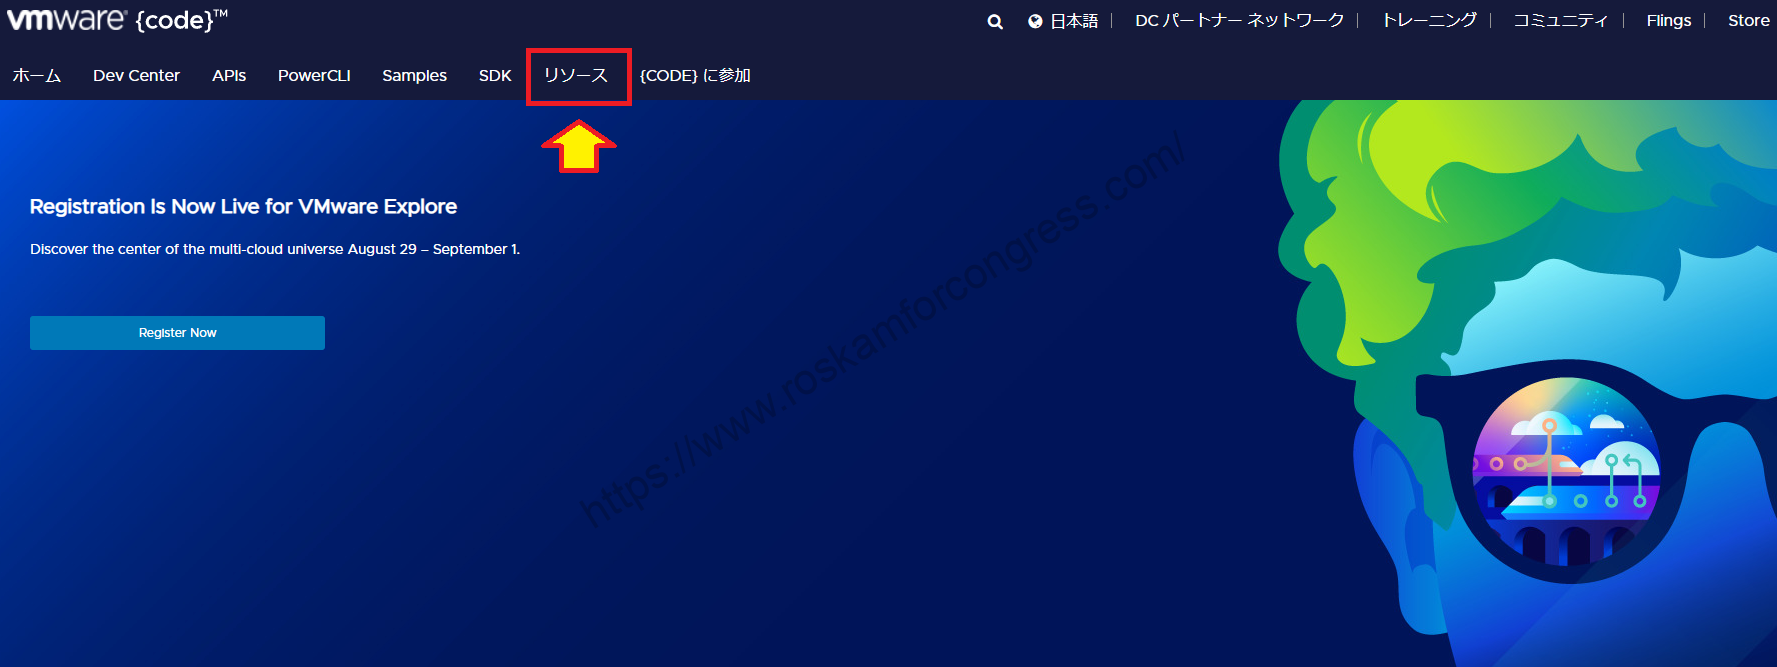 Capture d'écran du site web Adobe Flash Player.